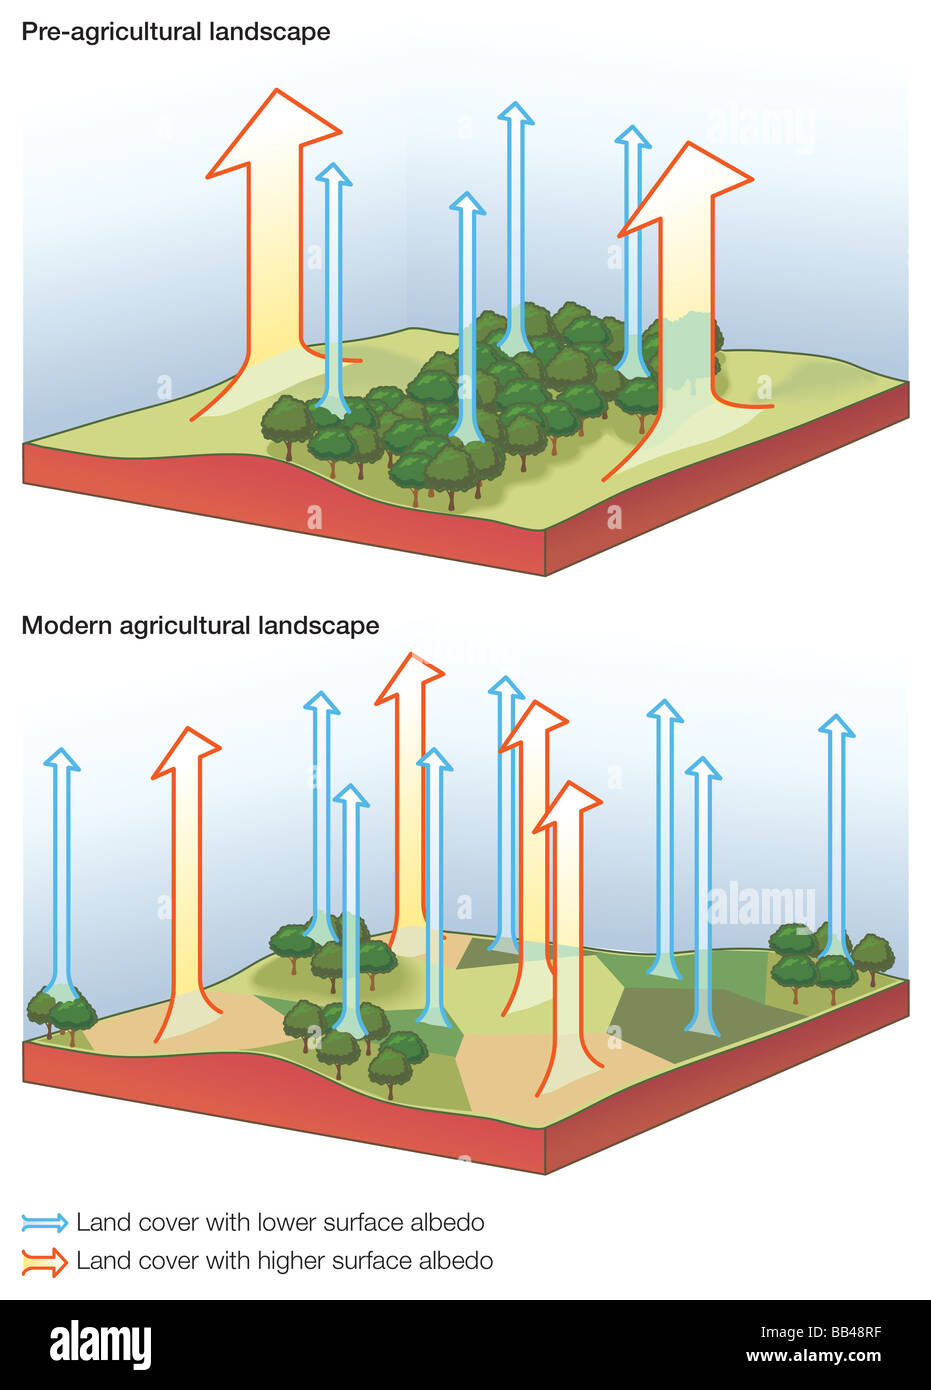 Die Oberfläche Reflexion Unterschiede zwischen Pre-landwirtschaftliche (Wald) und einem modernen landwirtschaftlichen (Patchwork Heizung) Landschaft. Stockfoto